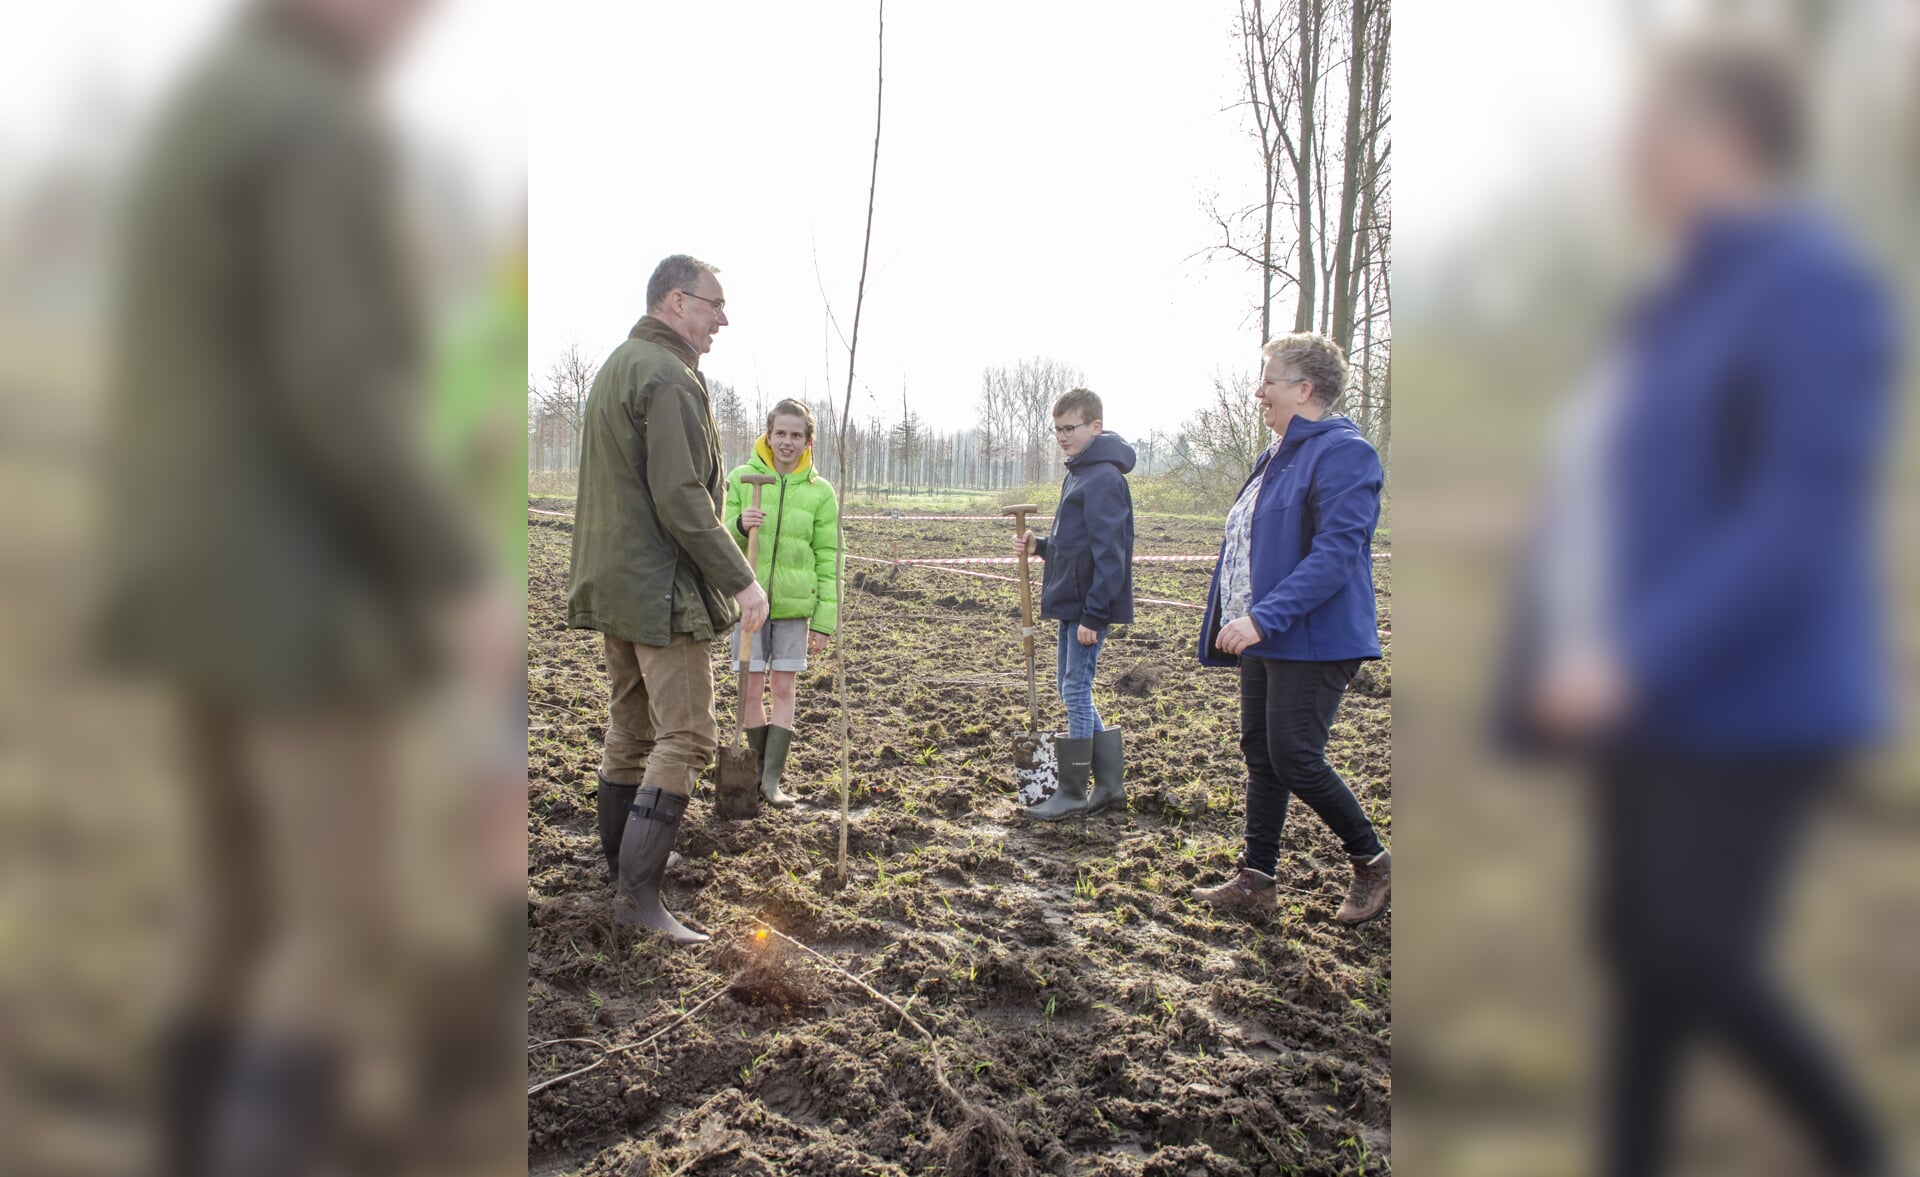 Tijdens de Boomfeestdag werden op Onrooi in Liempde veel bomen geplant door leerlingen van basisschool De Oversteek. Dat deden zij samen met burgemeester Ronald van Meygaarden.